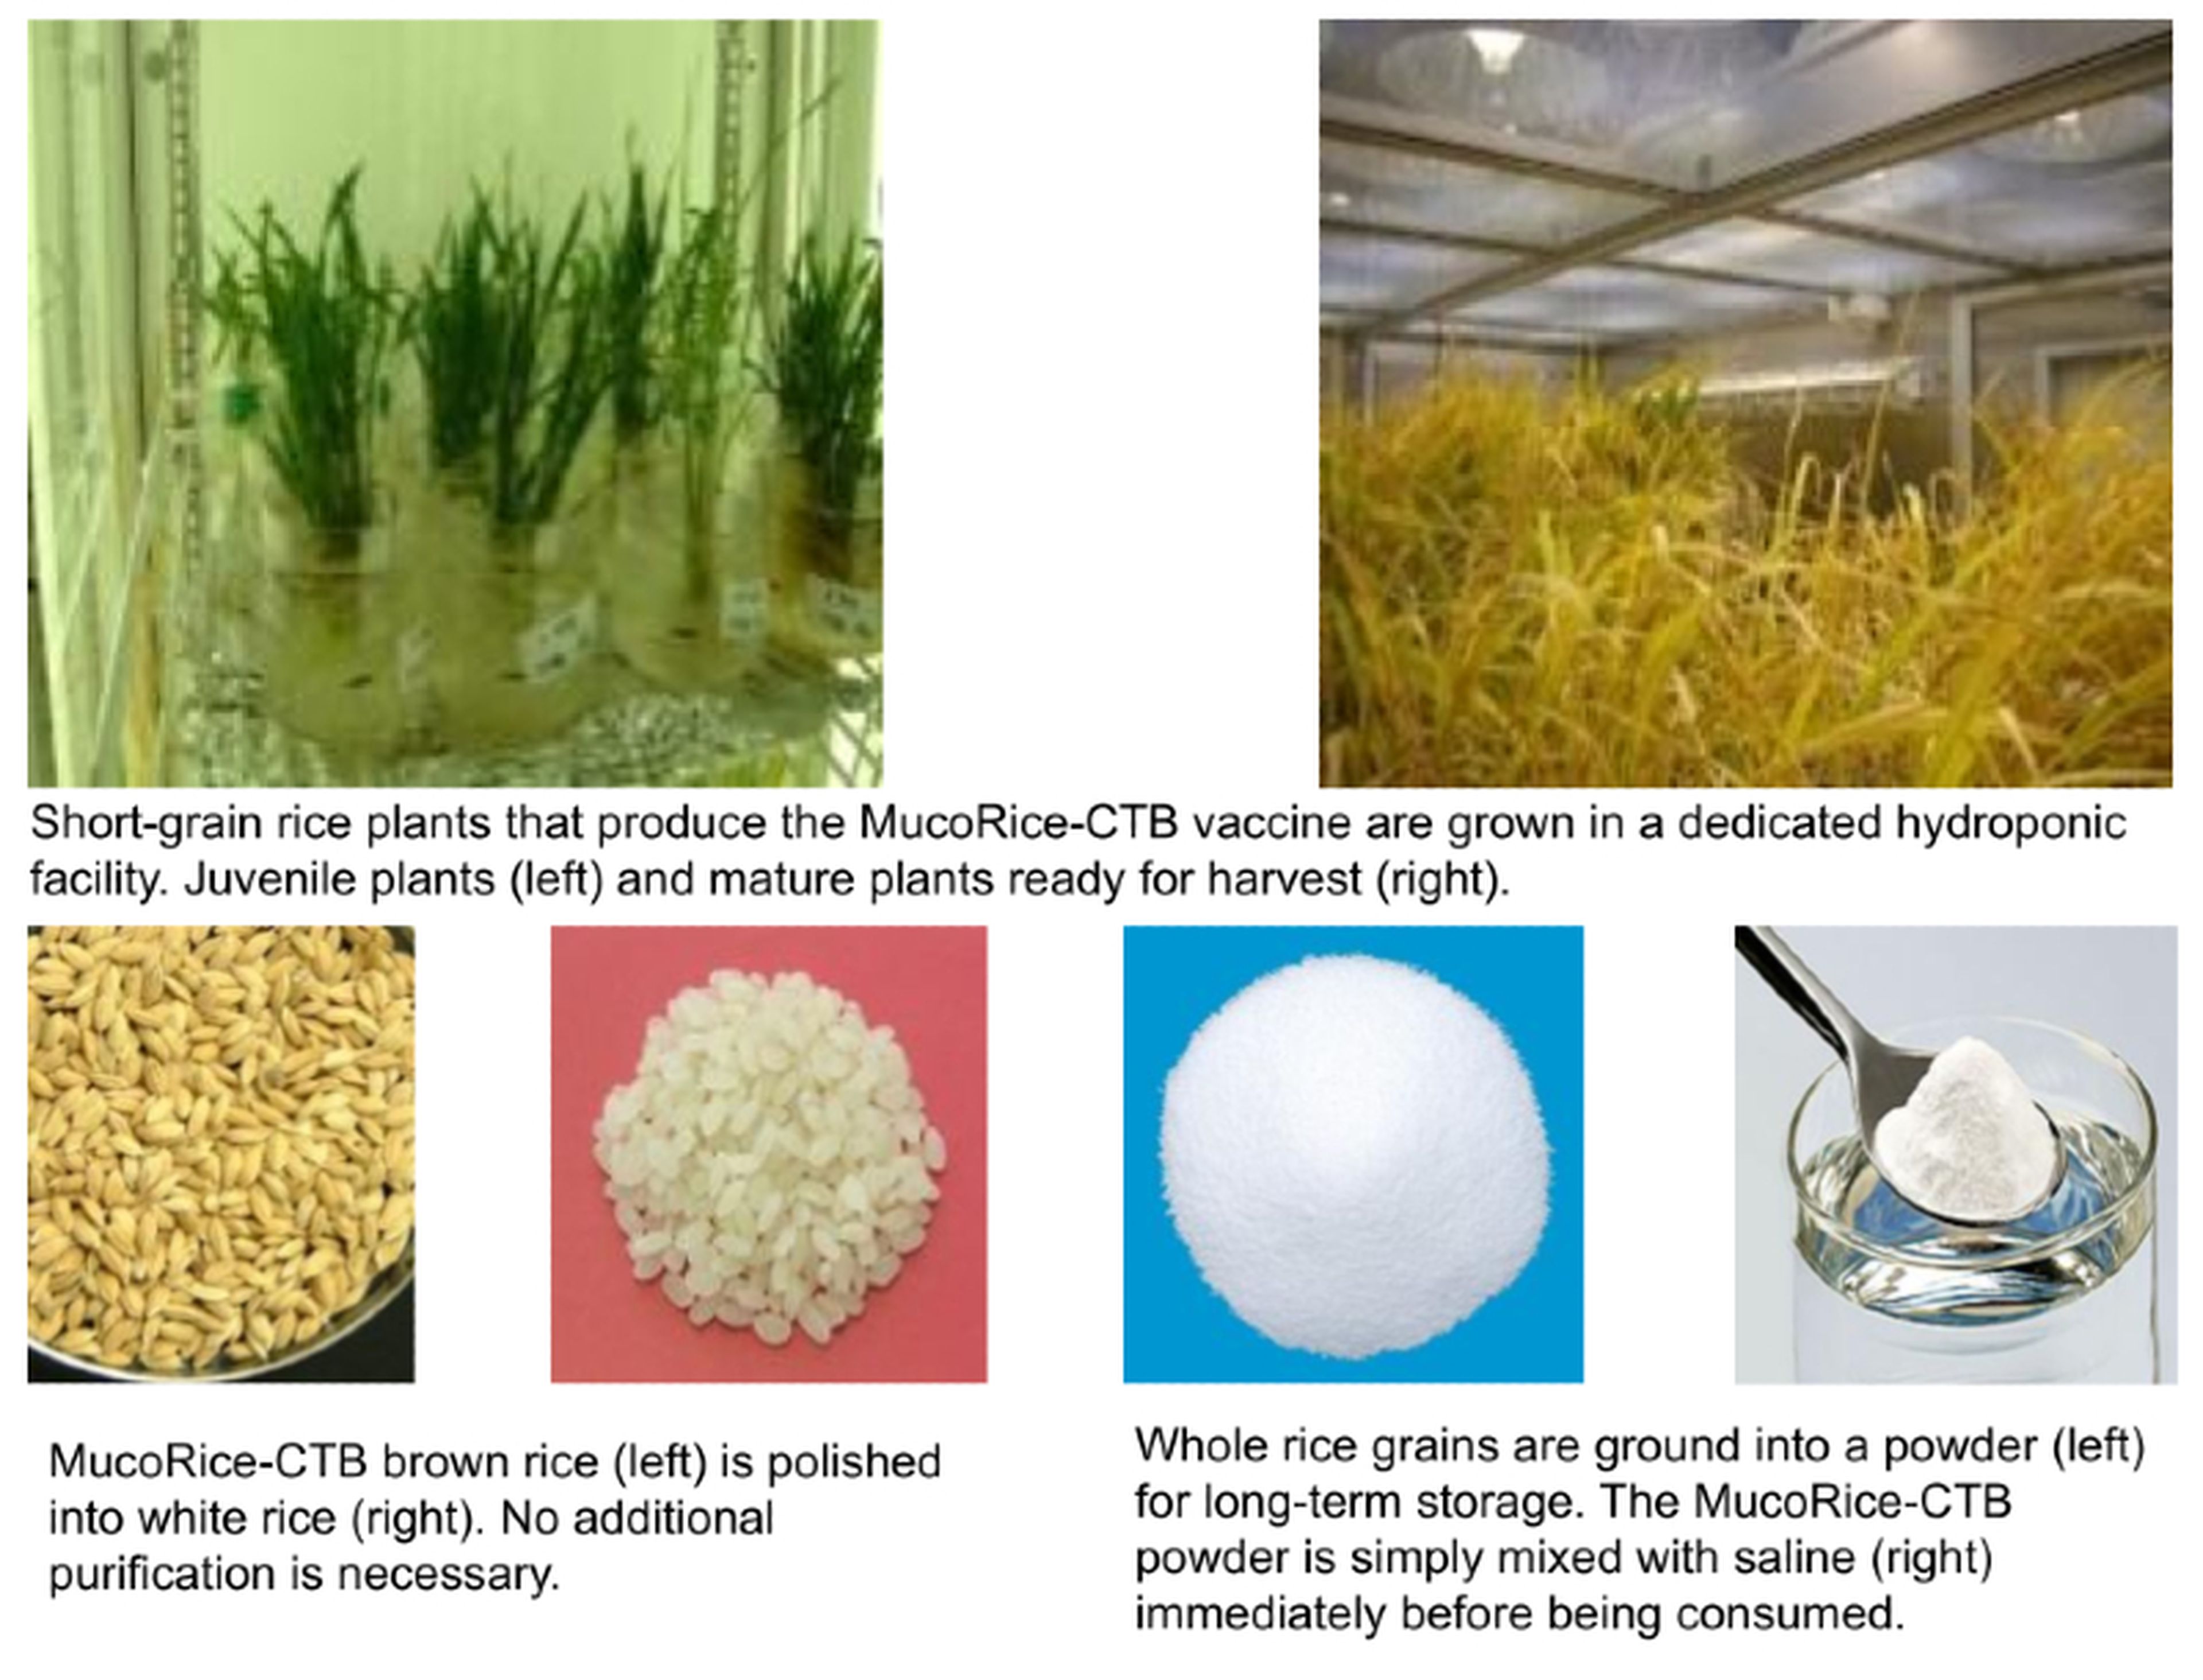 La vacuna MucoRice-CTB se cultiva en plantas de arroz y estimula la inmunidad mediante las membranas mucosas de los intestinos. No necesita agujas ni refrigeración para su almacenaje y transporte.